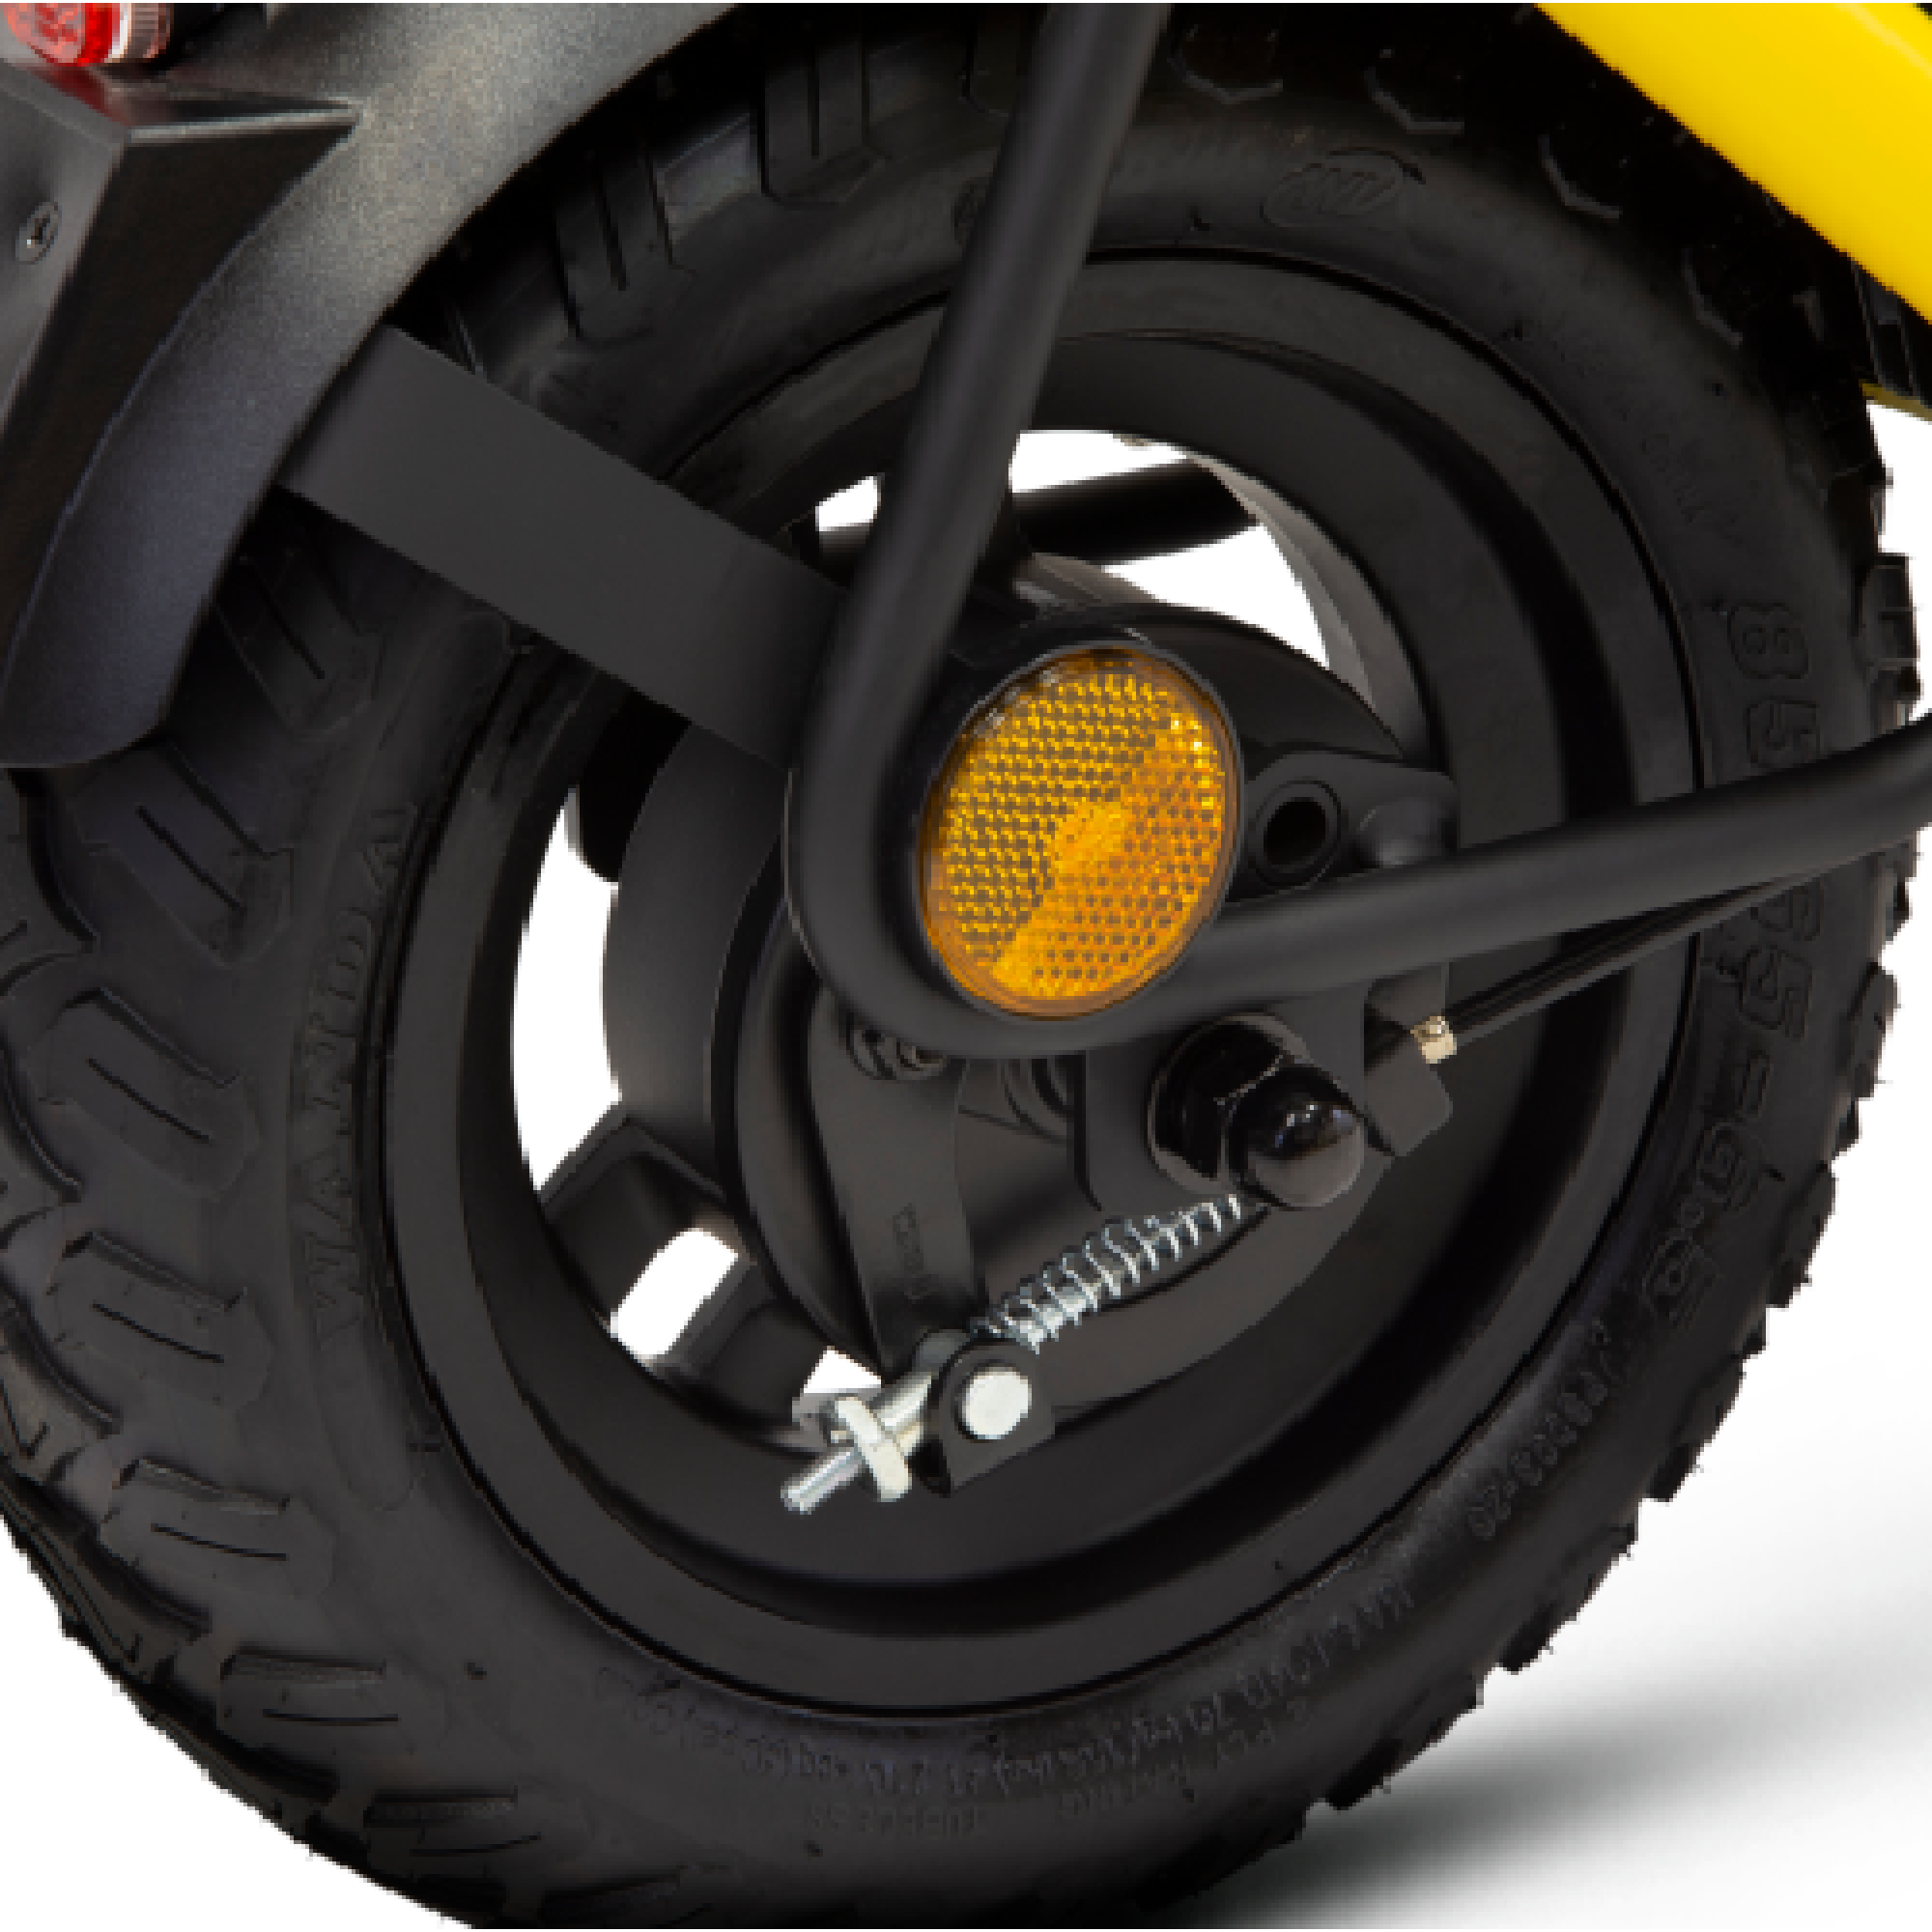 קורקינט חשמלי מתקפל Scrambler Ducati City Cross Ex - צבע צהוב שחור שנה אחריות ע